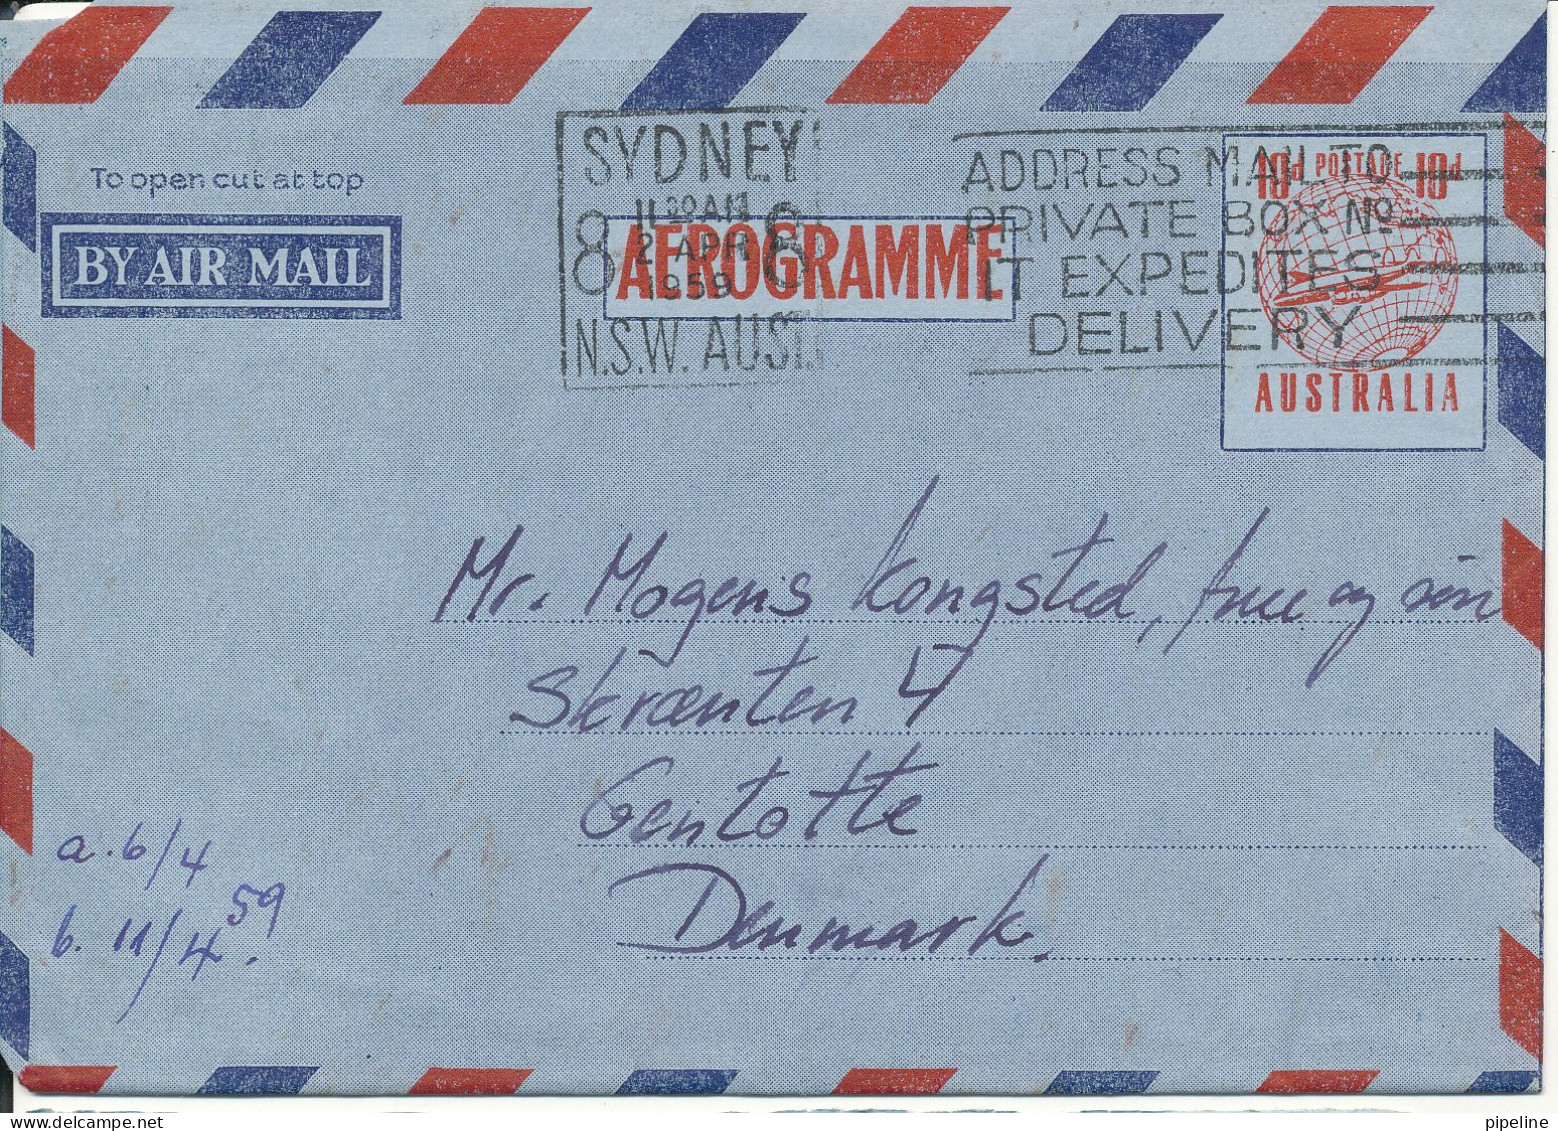 Australia Aerogramme Sent To Denmark Sydney 27-4-1959 - Luchtpostbladen